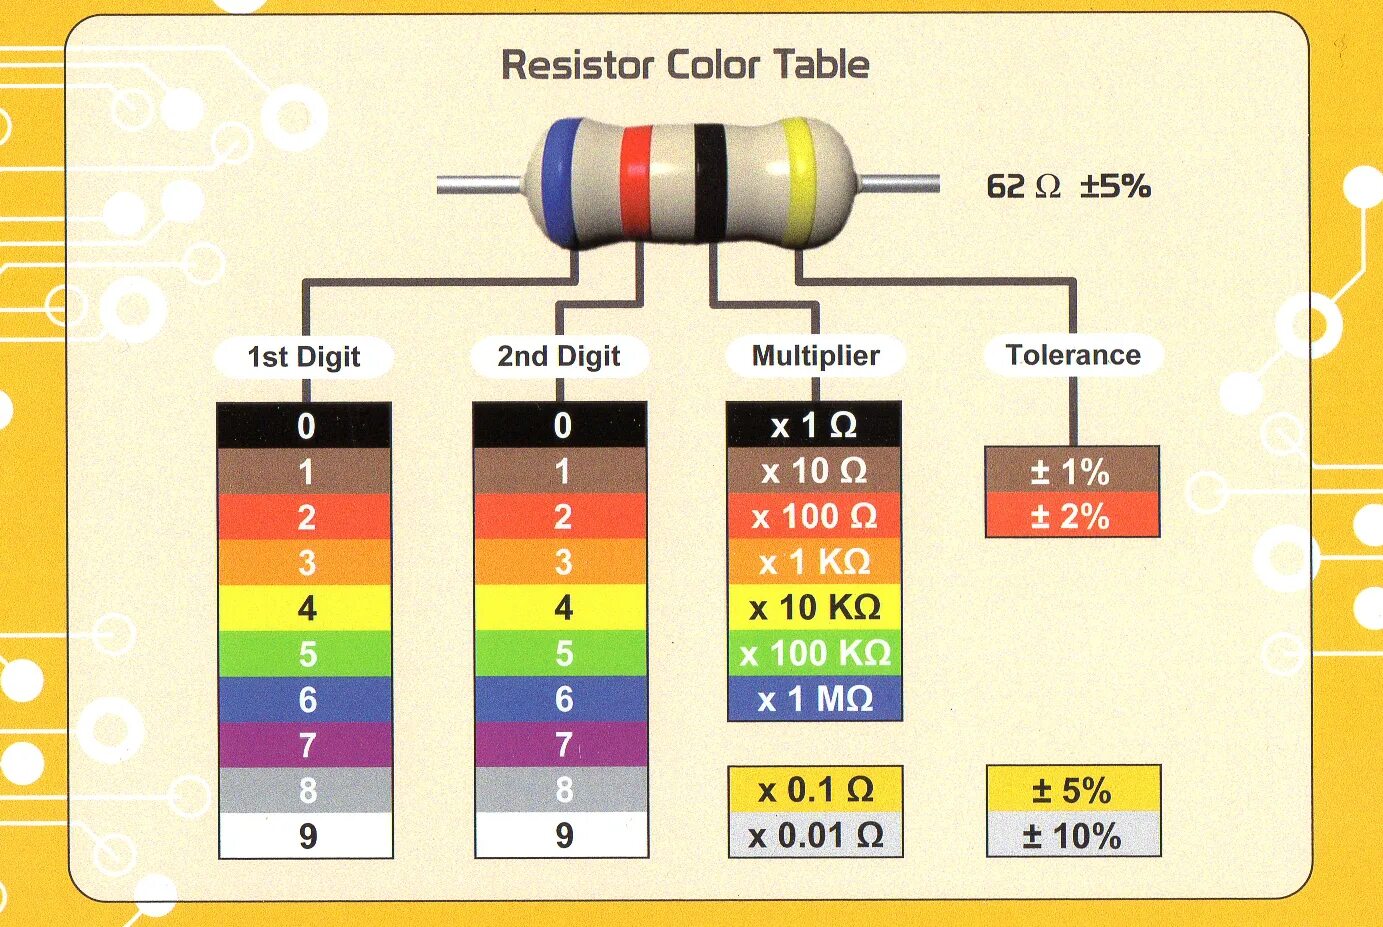 Цветовая маркировка резисторов 4 полосы. Цветовая маркировка резисторов 2 полосы. Цветовая маркировка резисторов 5 полос. Резистор 0.22 Ома цветовая маркировка. Номинал цветного резистора